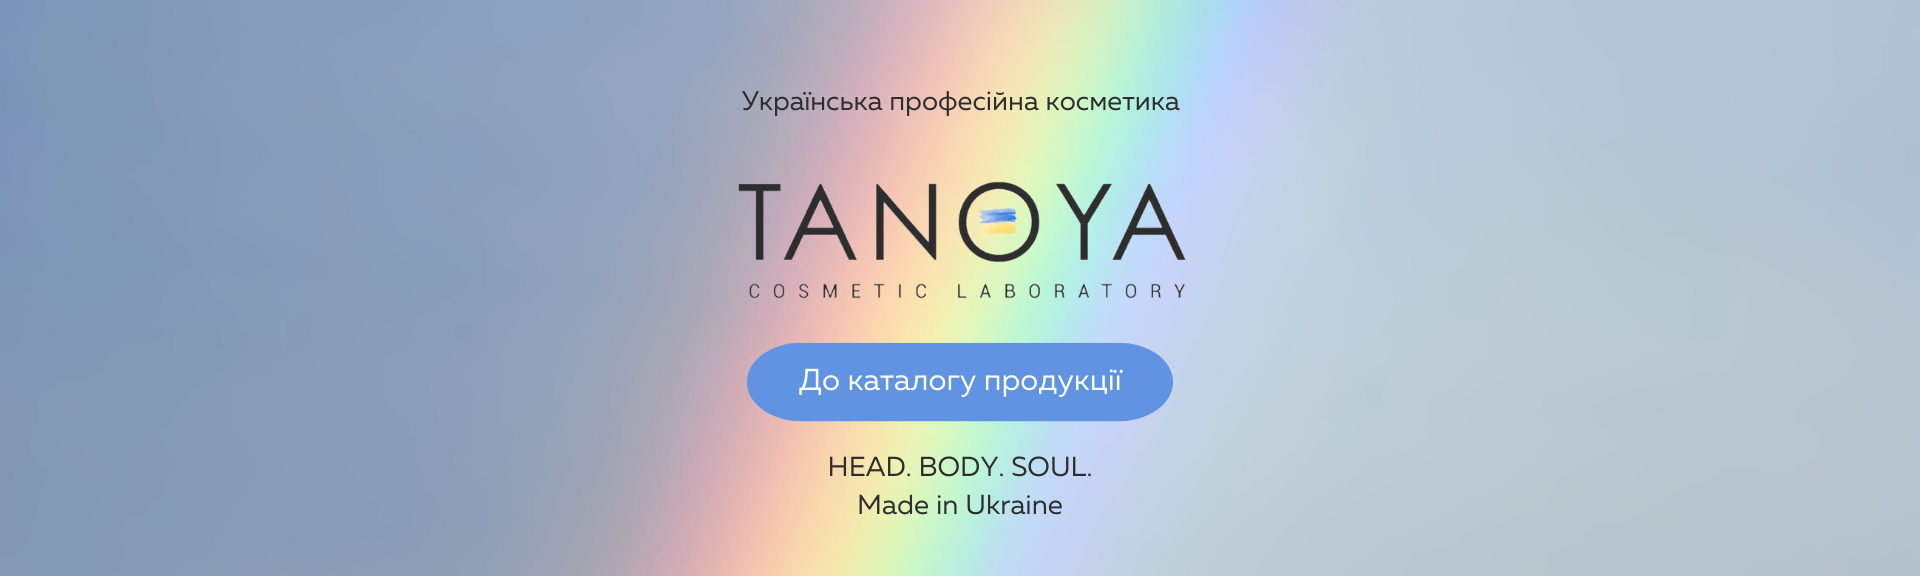 Фото професійної косметики від українського виробника - TANOYA